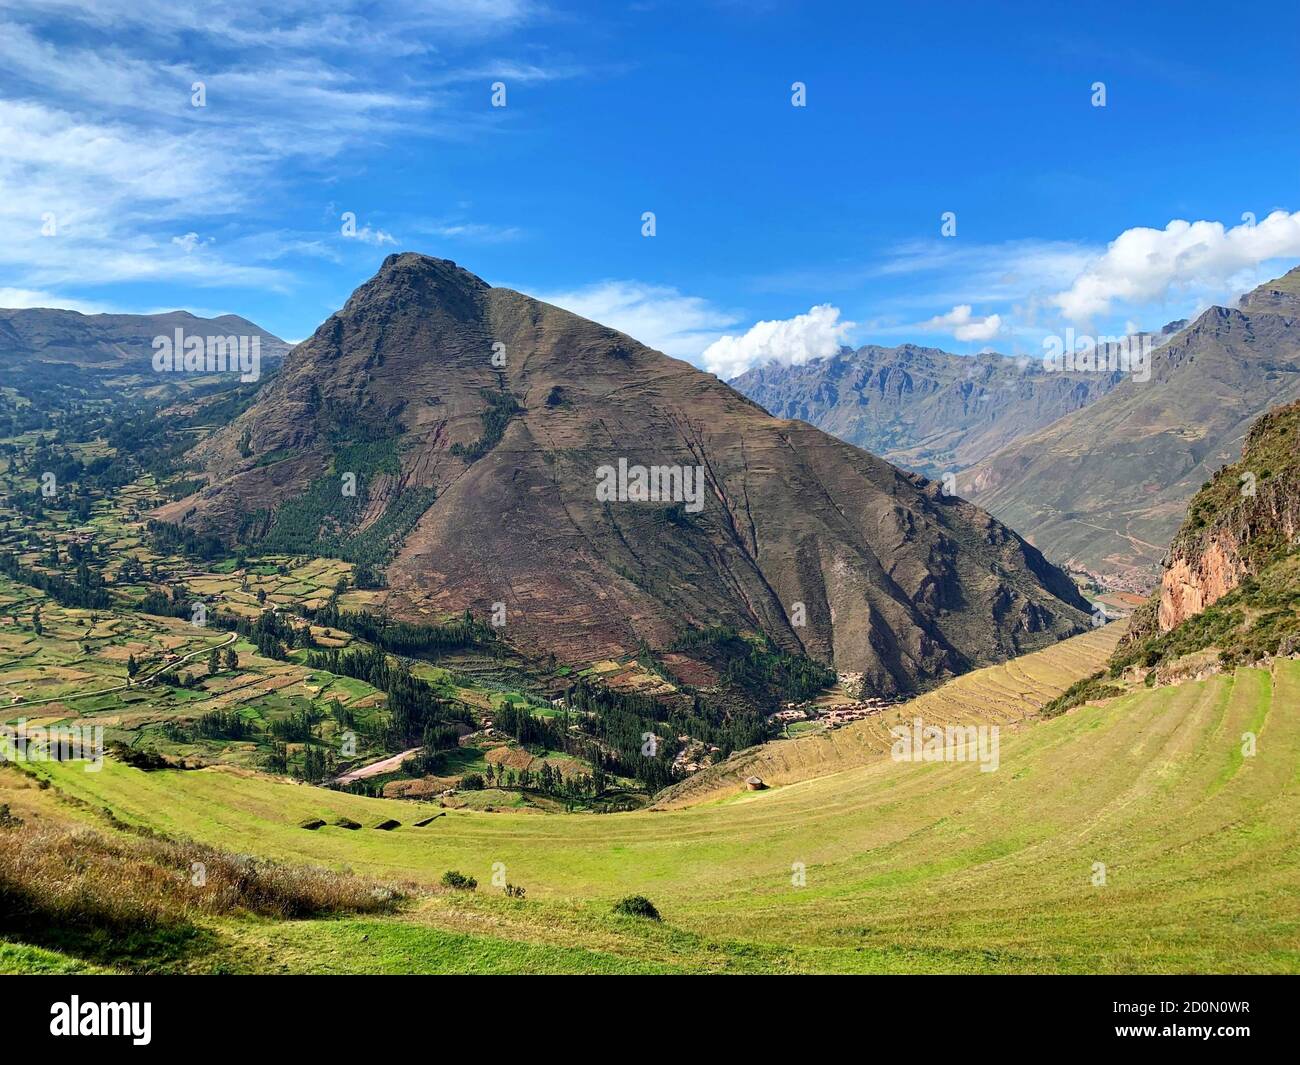 Vallée sacrée Incas Pérou région Cusco, terrasses agricoles vertes entouré de montagnes des Andes, idyllique nature péruvienne, paysage pittoresque d'été. Banque D'Images